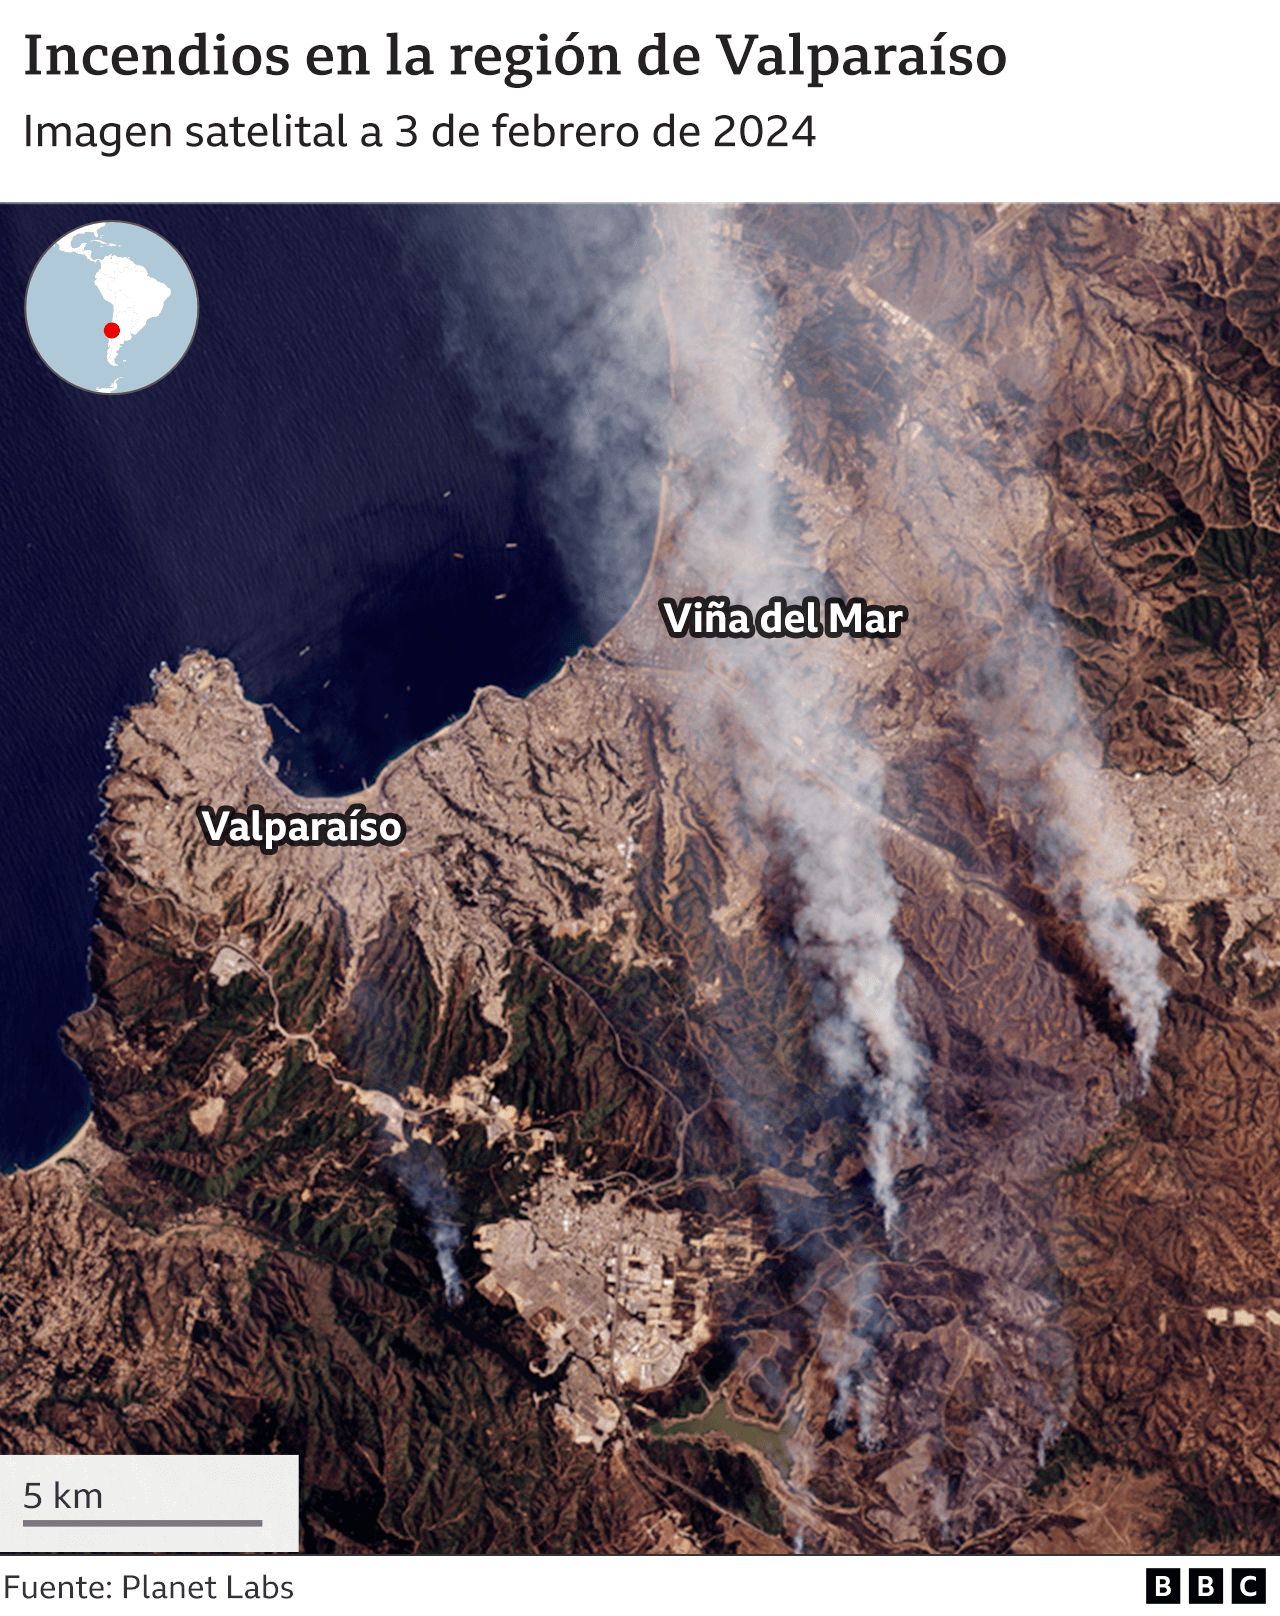 Incendios en la región de Valparaíso vistas desde el espacio